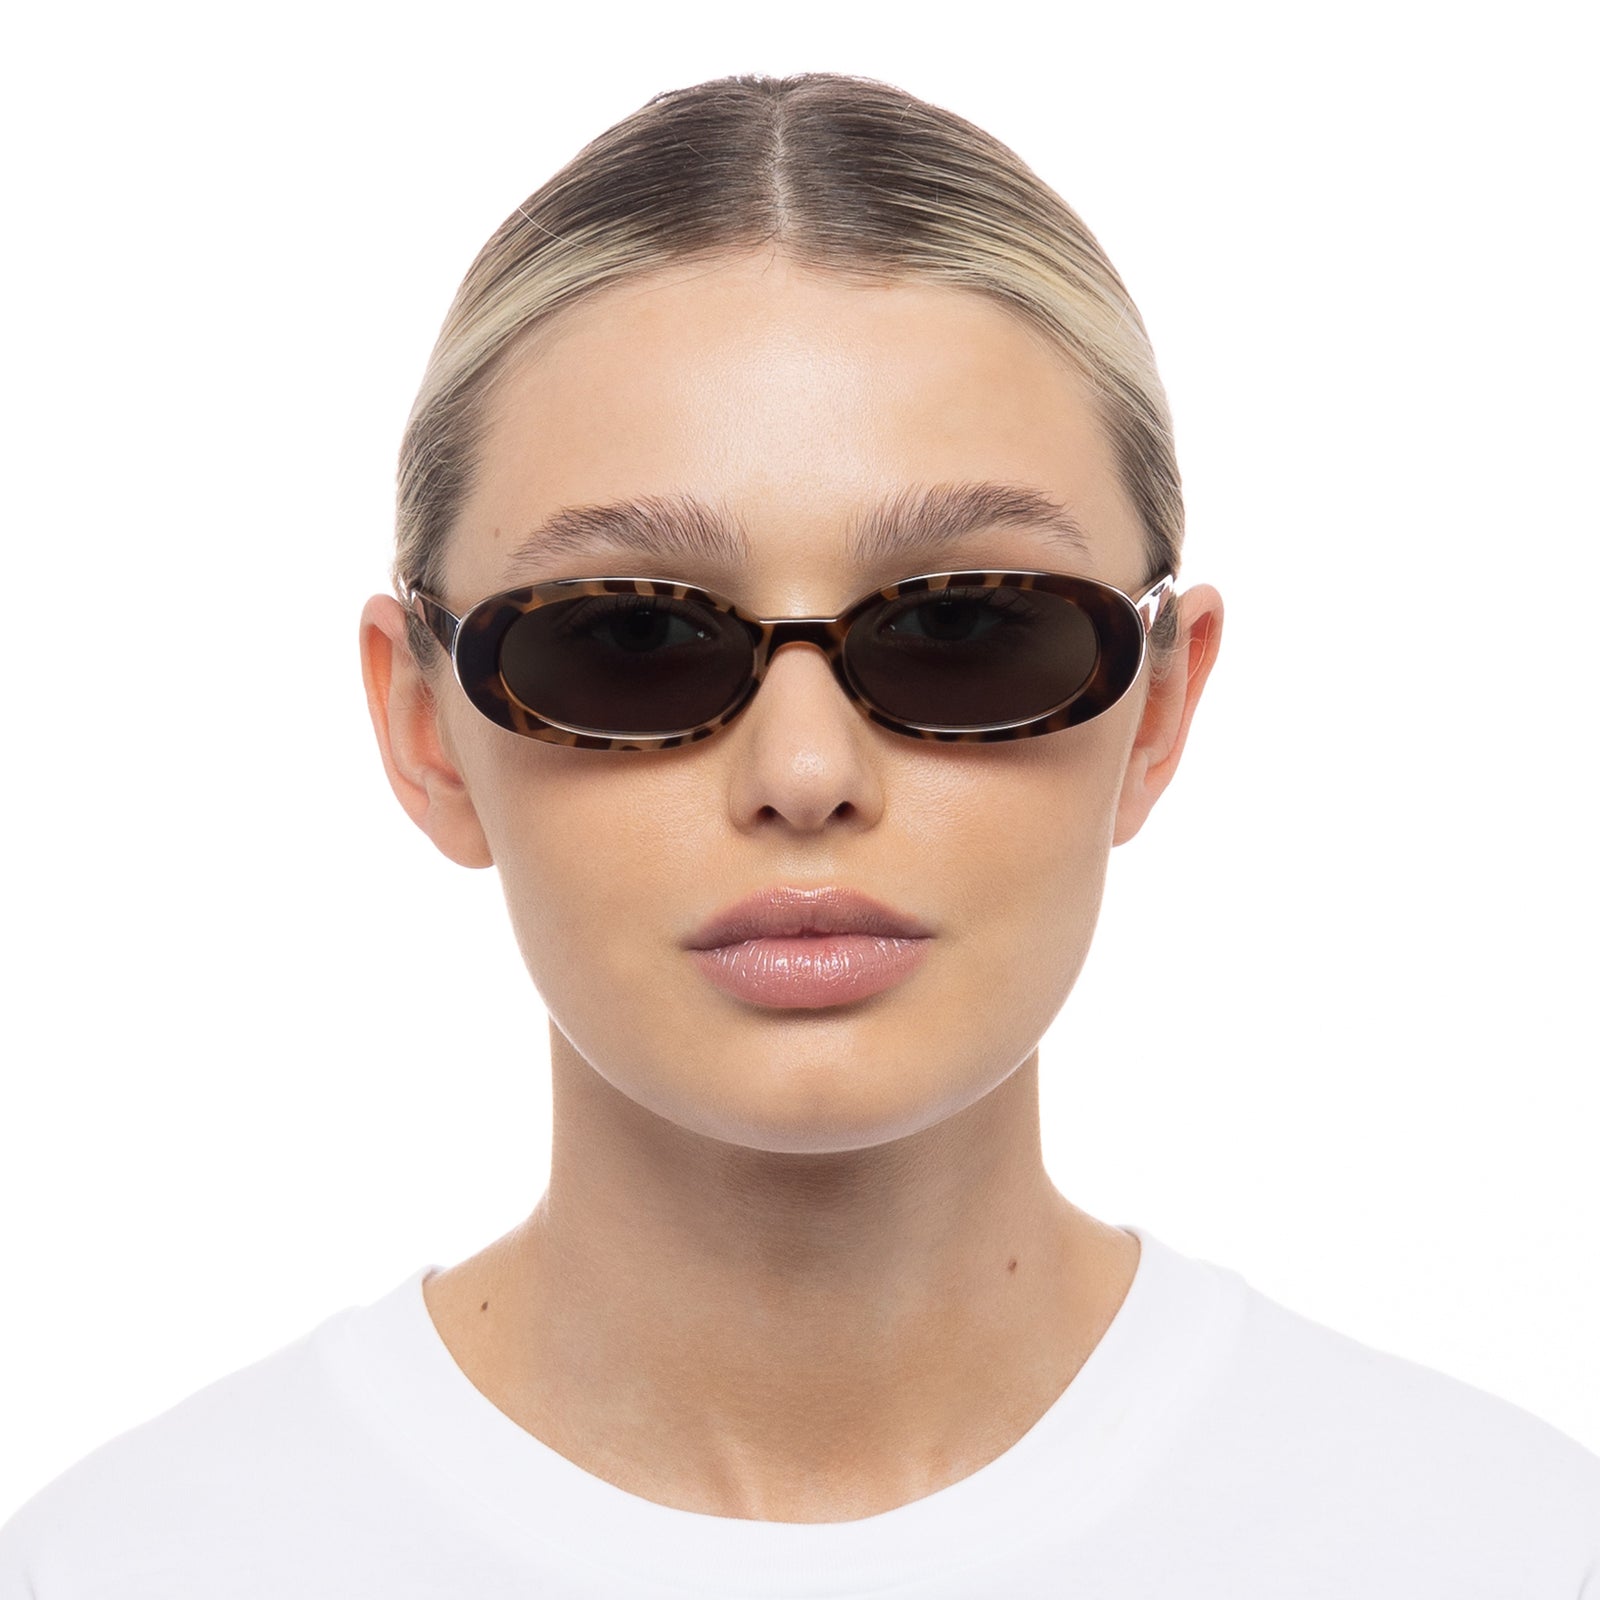 Outta Love Tort Uni-Sex Oval Sunglasses | Le Specs